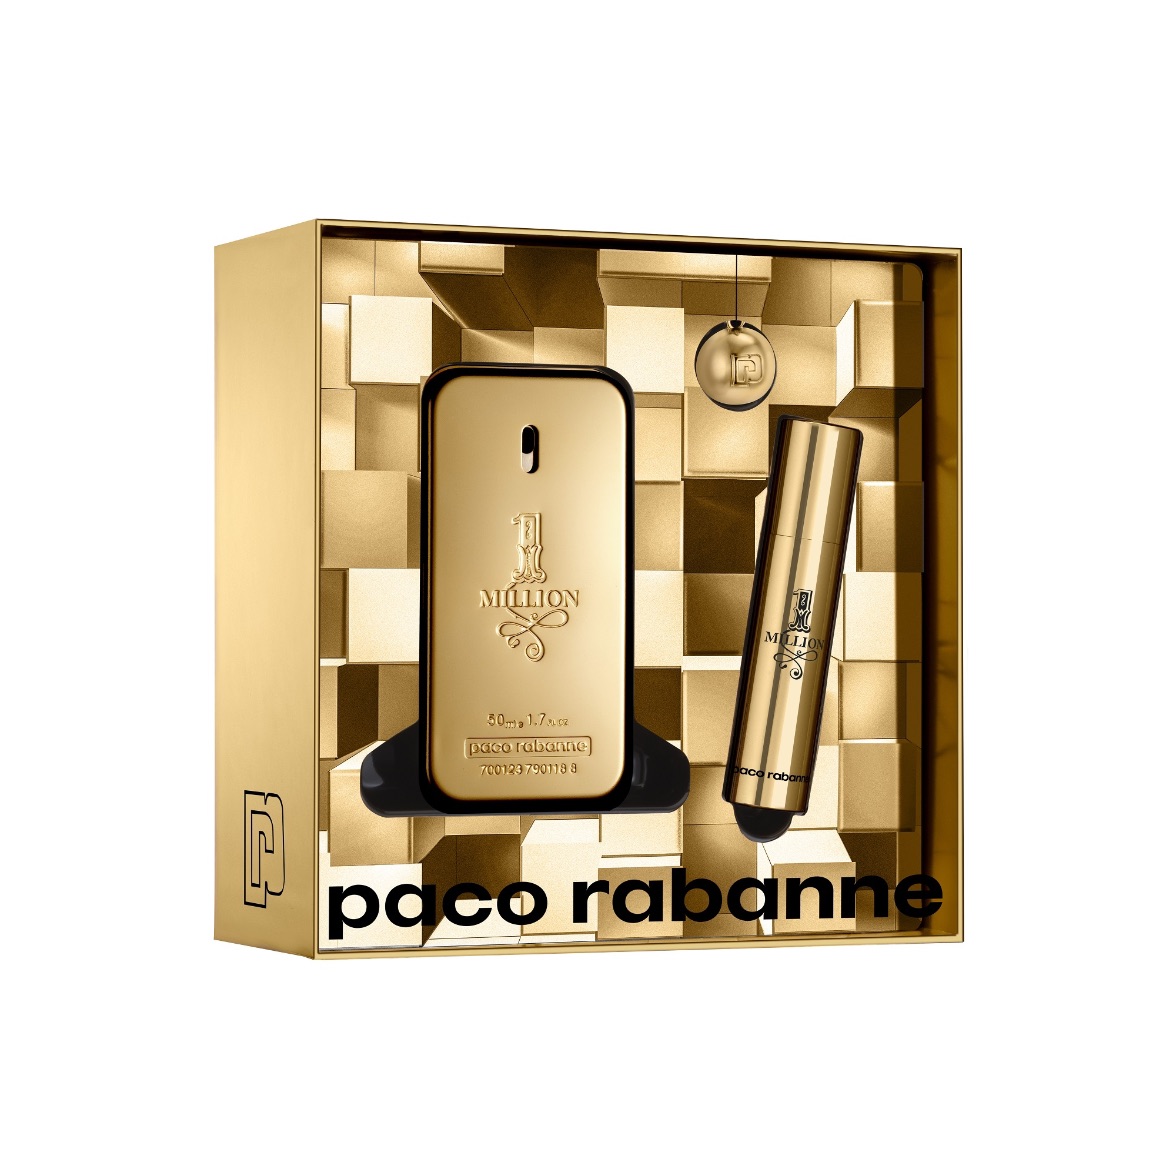 Paco Rabanne 2019 1 Million Eau De Toilette 50ml Gift Set